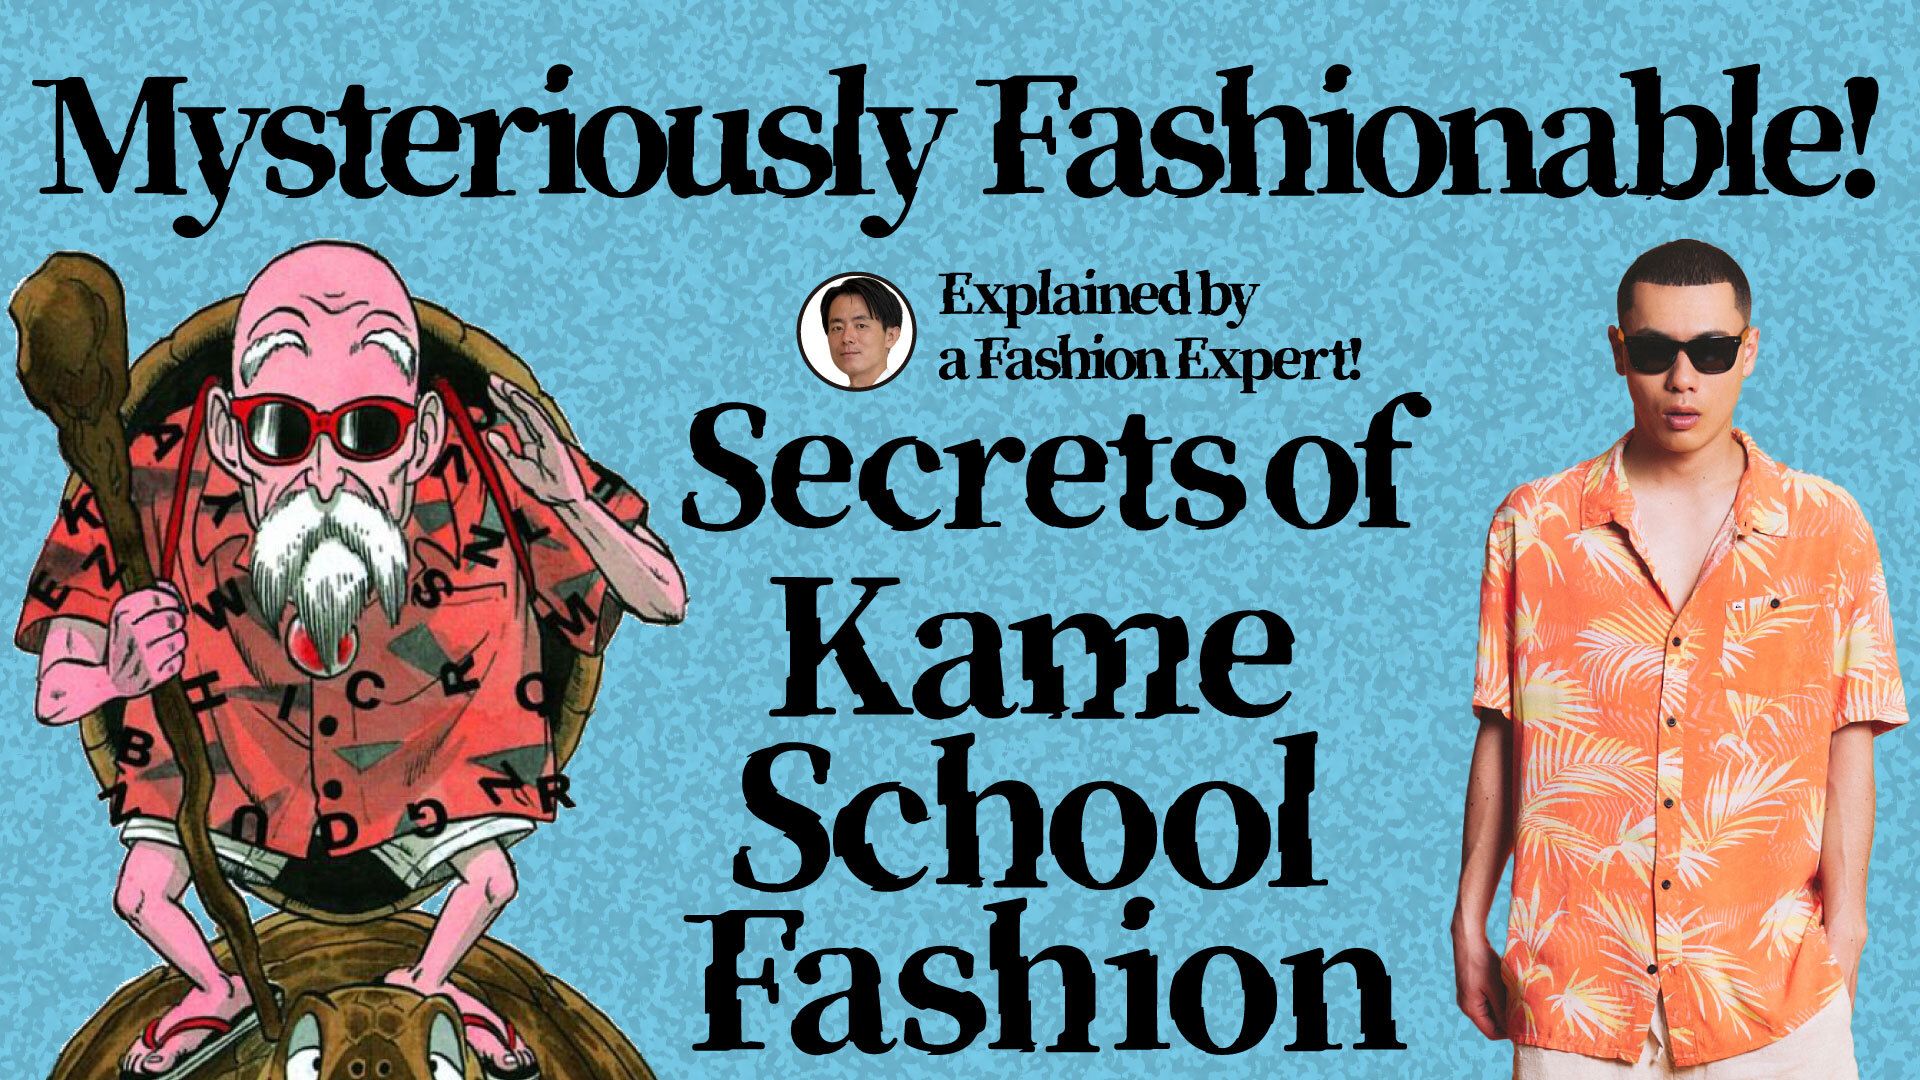 ¡ Kamesennin lo tiene todo en marcha! Un experto en Moda nos ayudó a abrir los ojos a los encantos del estilo de la Kame School